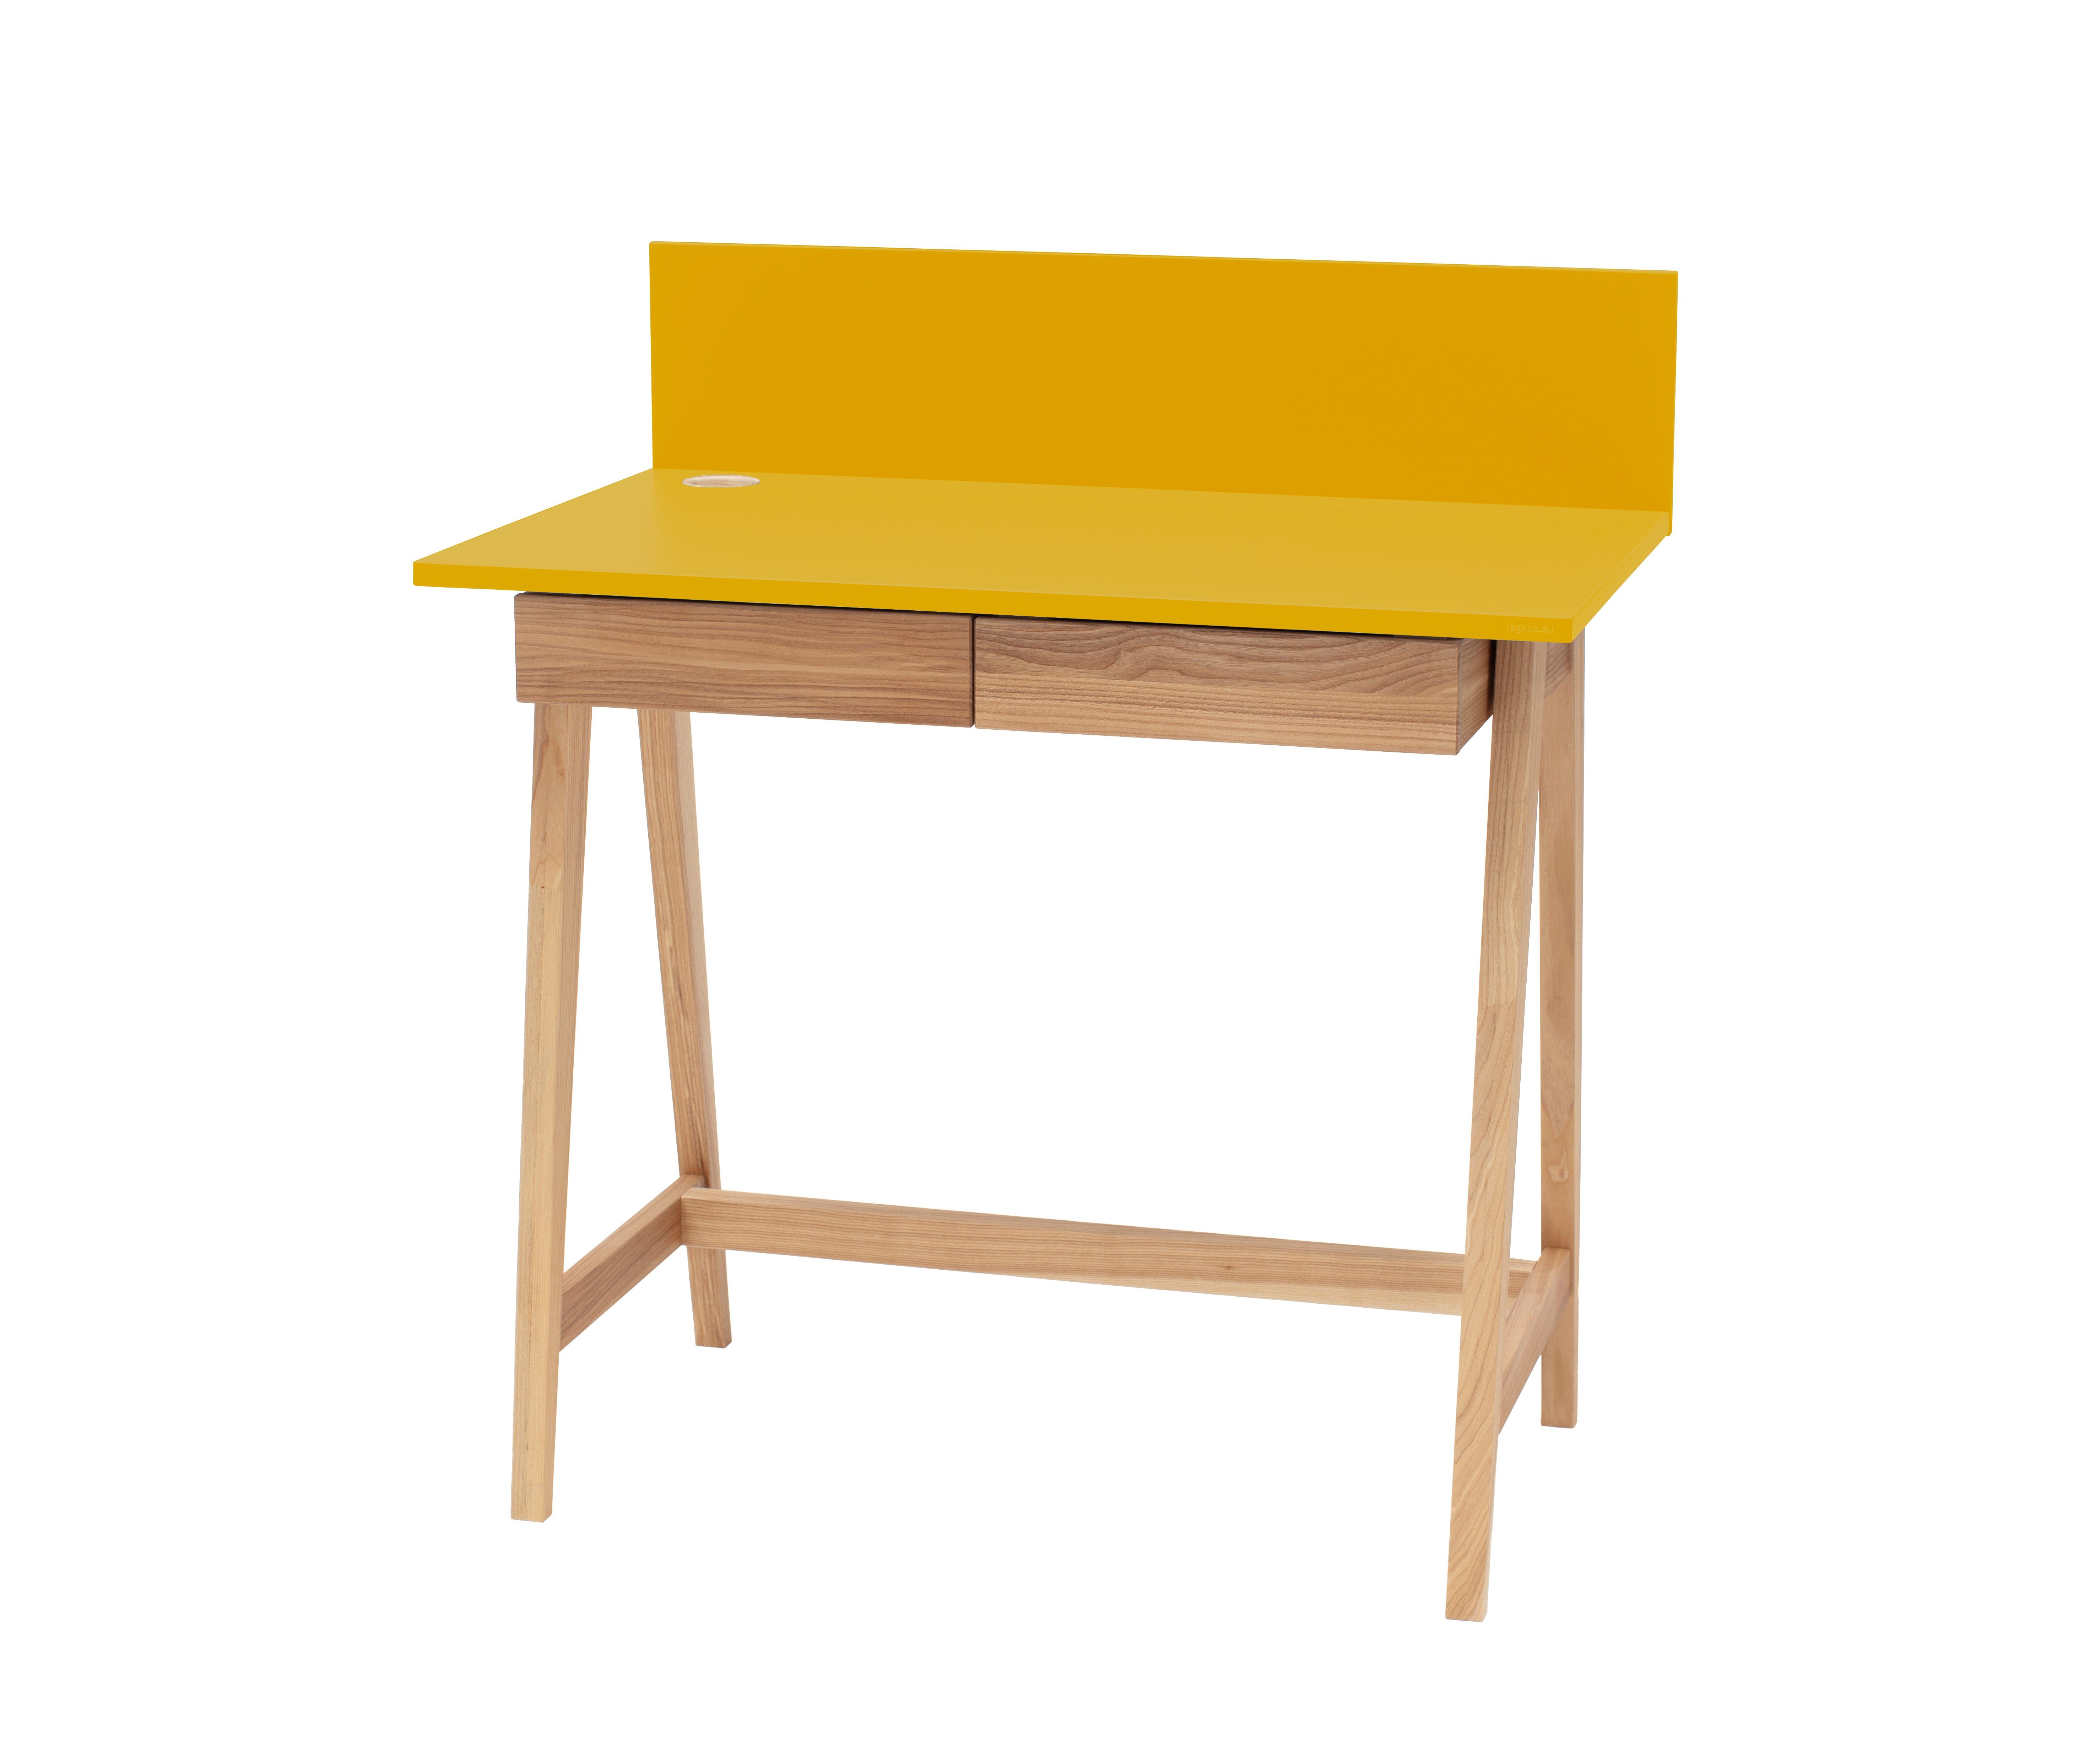 Siblo Schreibtisch Kinderschreibtisch Andrea mit Schubladen - Bunter Schreibtisch - minimalistisches Design - Kinderzimmer - MDF-Platte - Eschenholz (Kinderschreibtisch Andrea mit Schubladen) Gelb